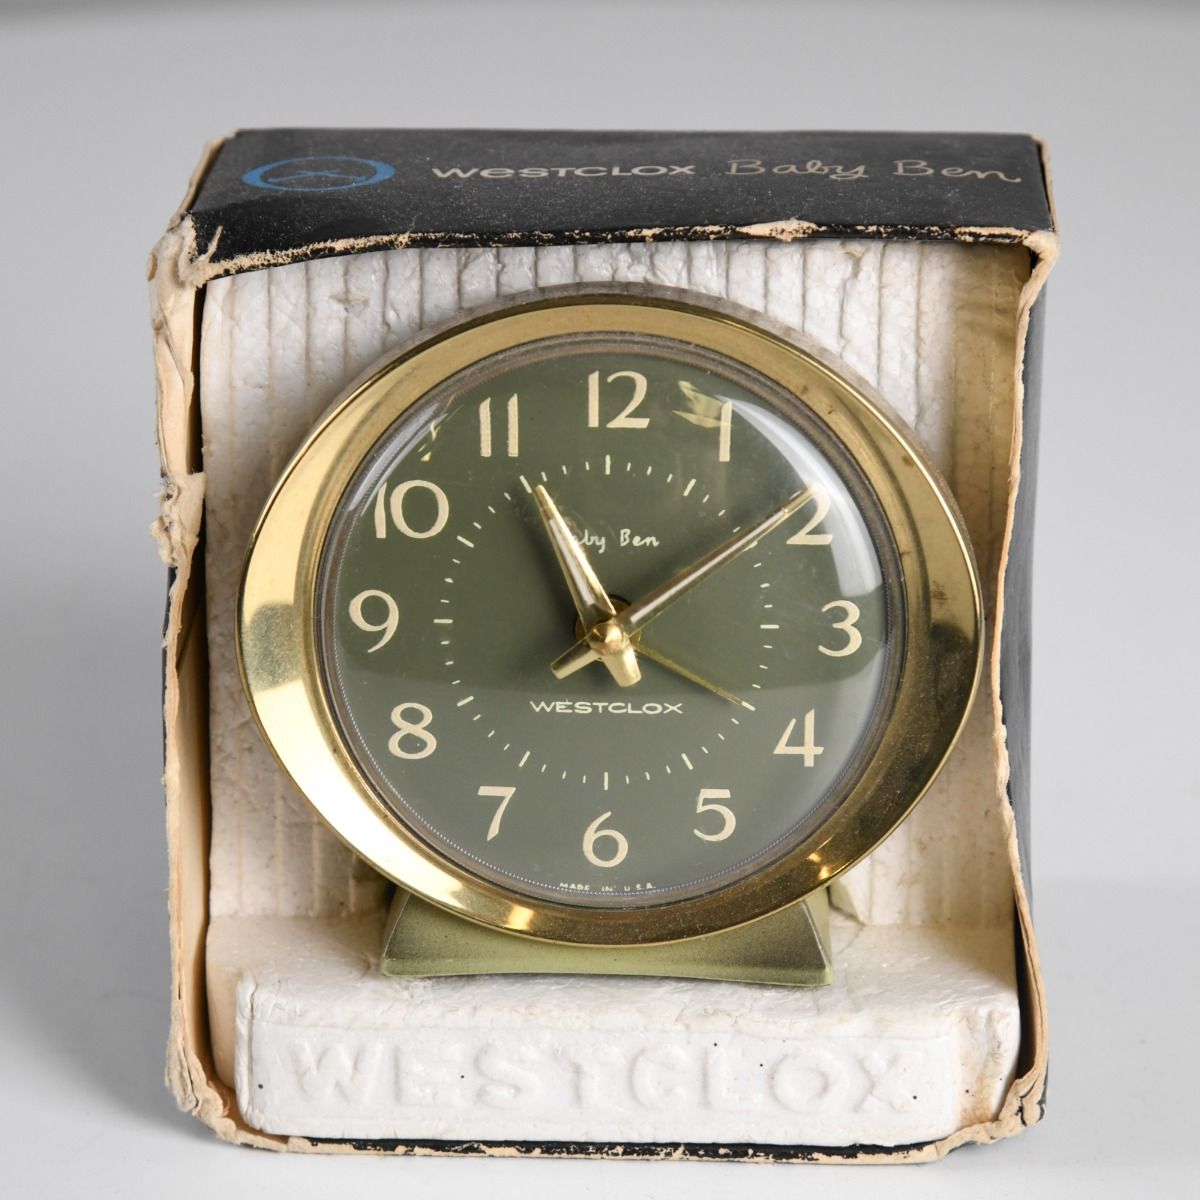 Vintage 1960s Westclox Baby Ben Alarm Clock